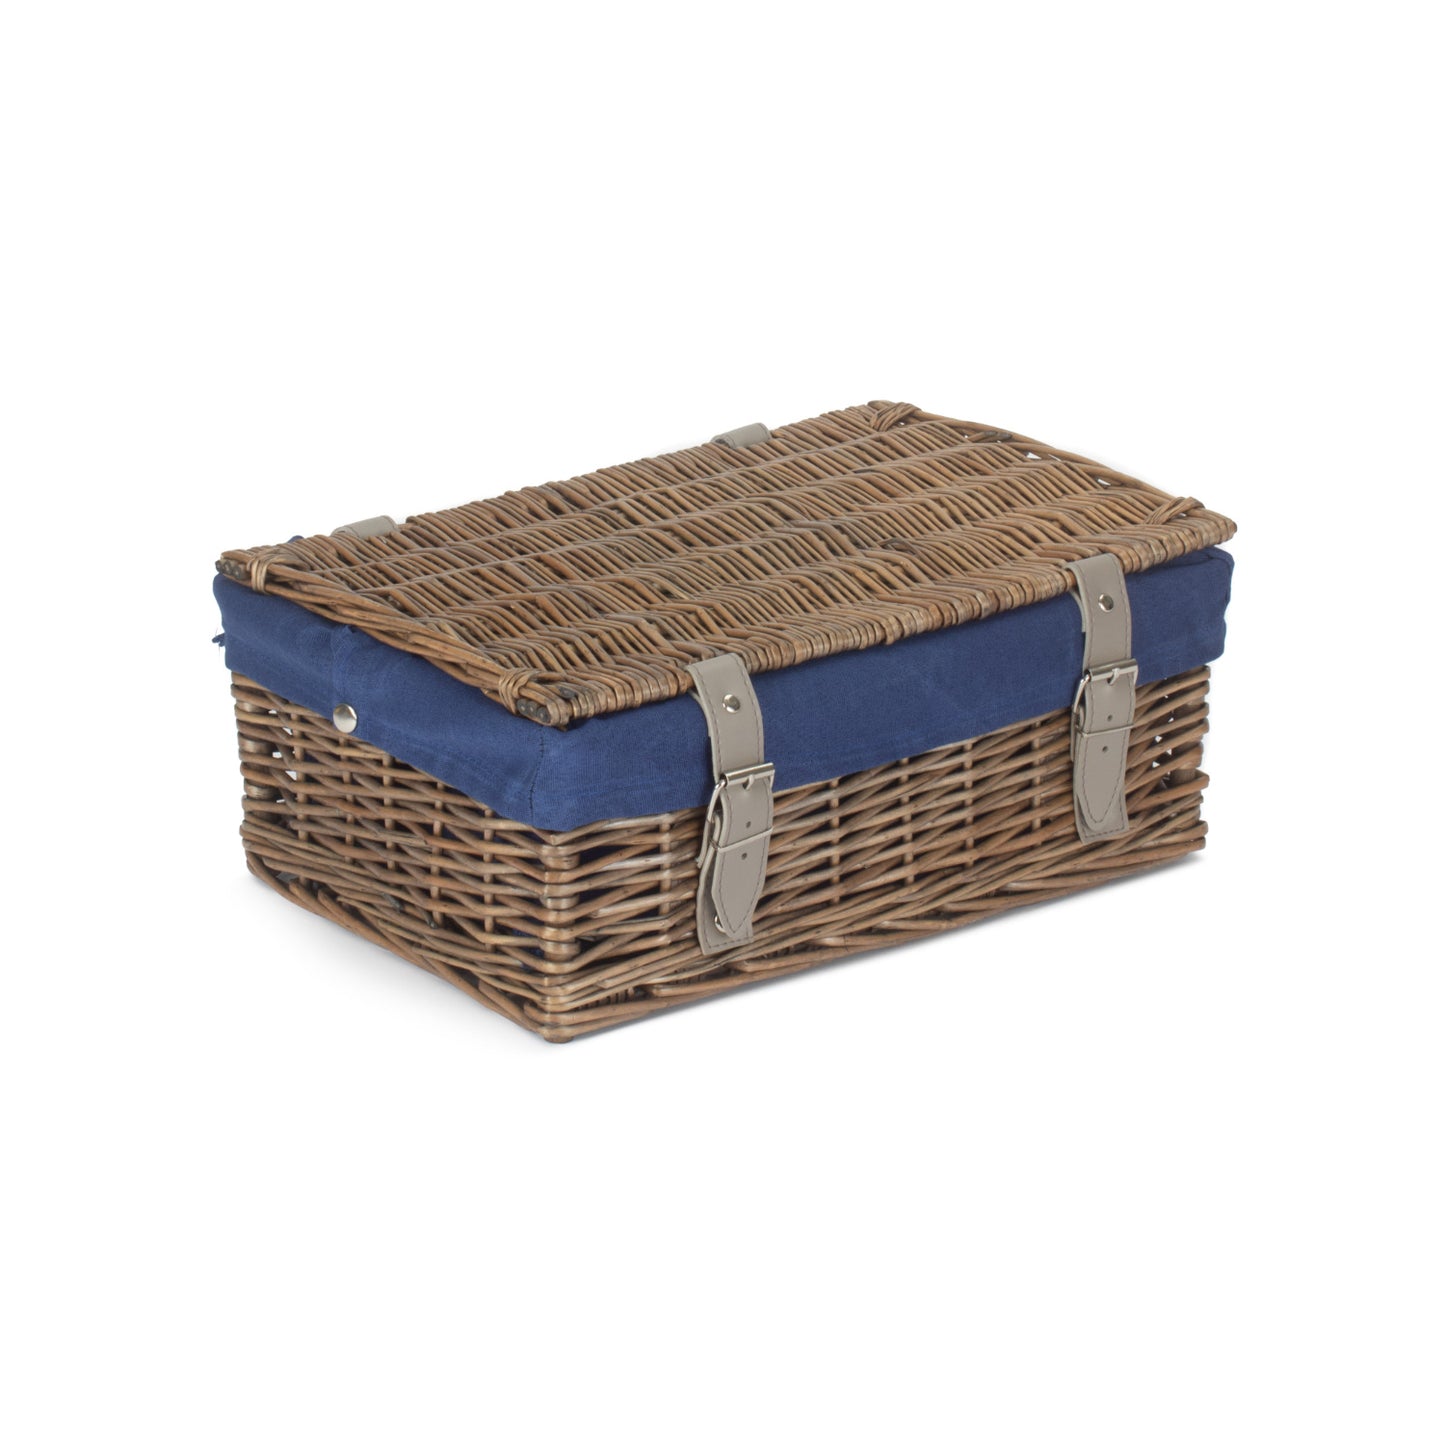 14 Inch Empty Wicker Hamper Basket - Antique Wash - Navy Blue Lining